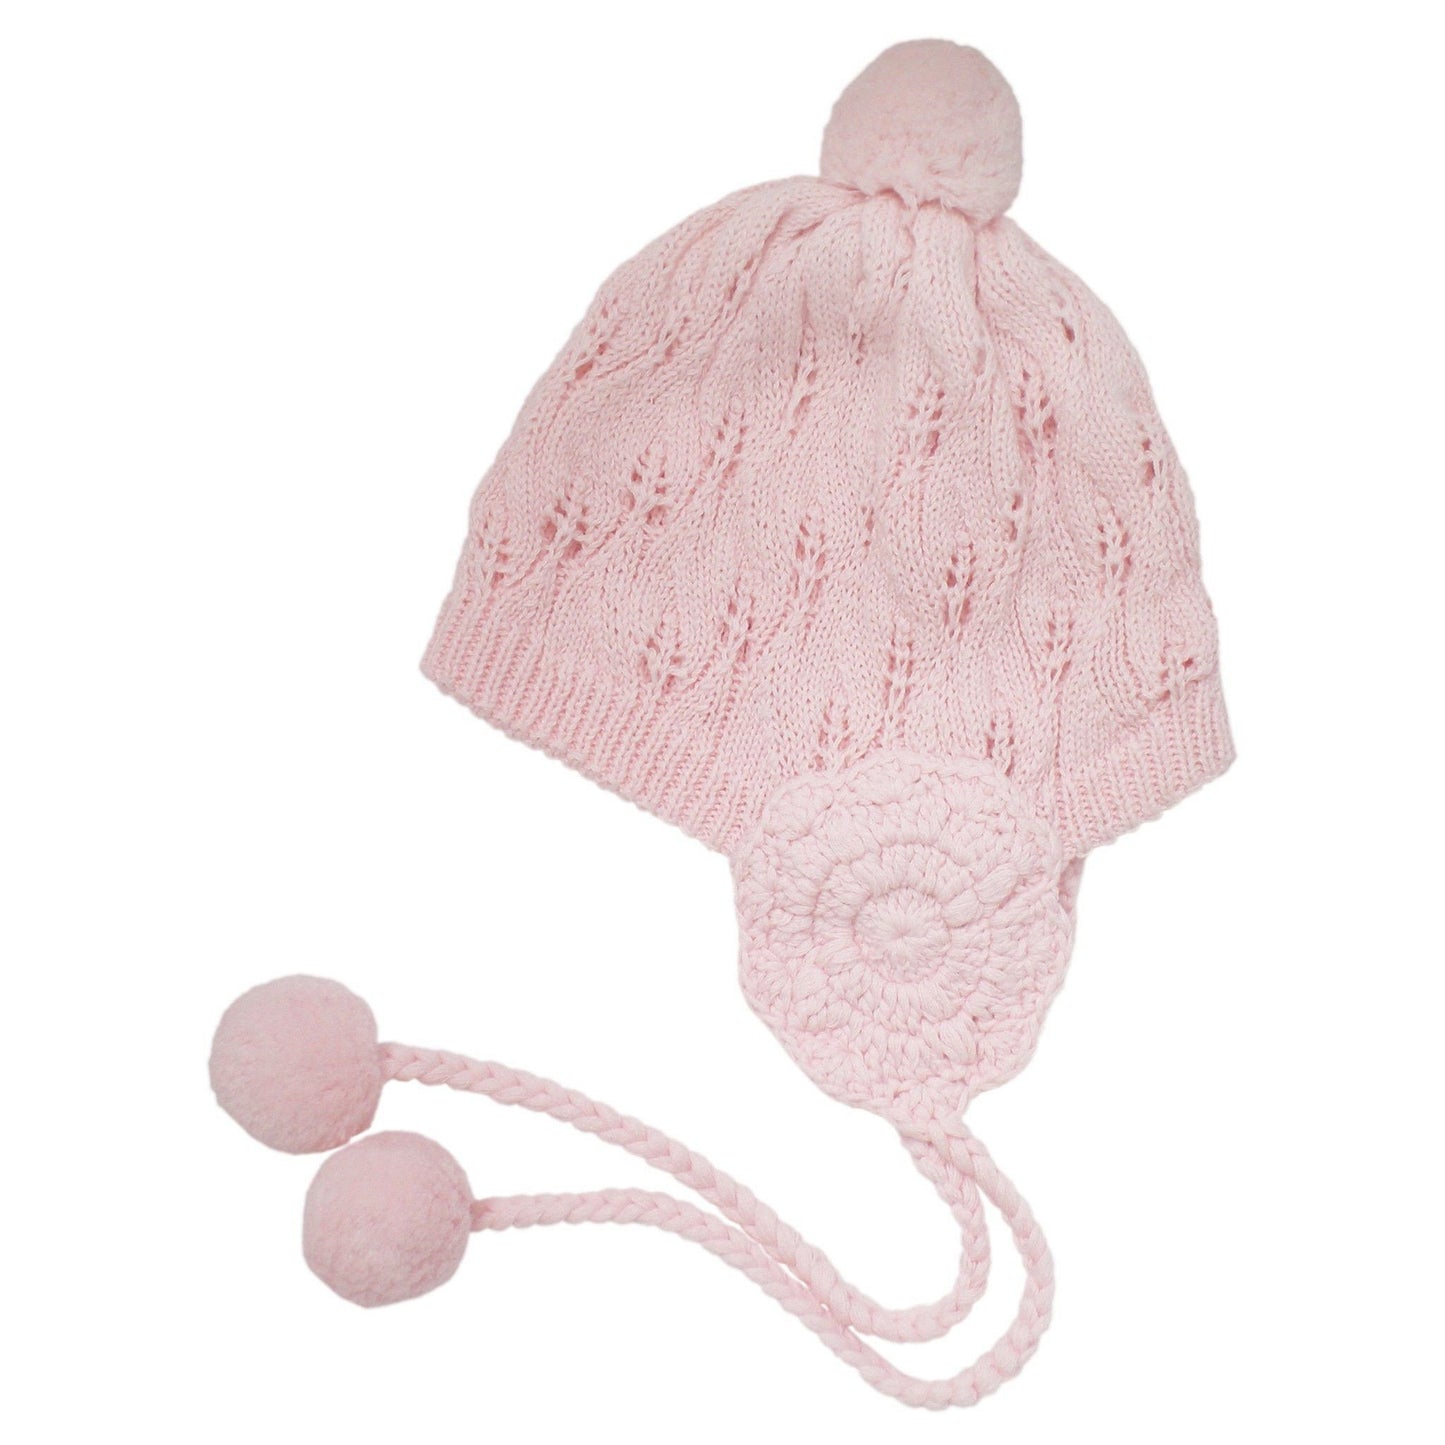 Filigree Pink Lacy Crochet Earflap Bonnet